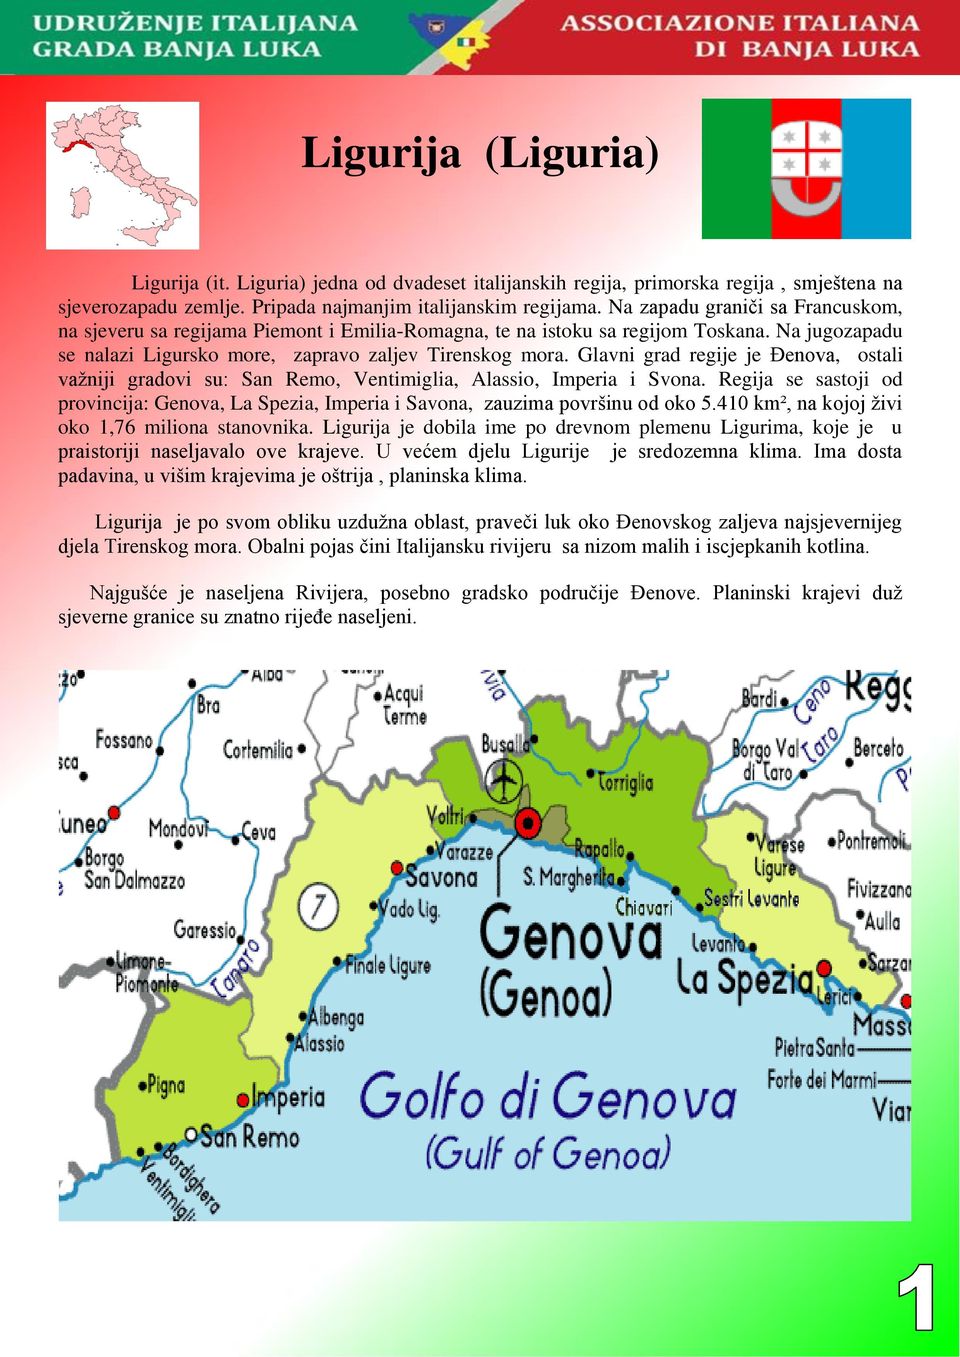 Glavni grad regije je Đenova, ostali vaţniji gradovi su: San Remo, Ventimiglia, Alassio, Imperia i Svona.